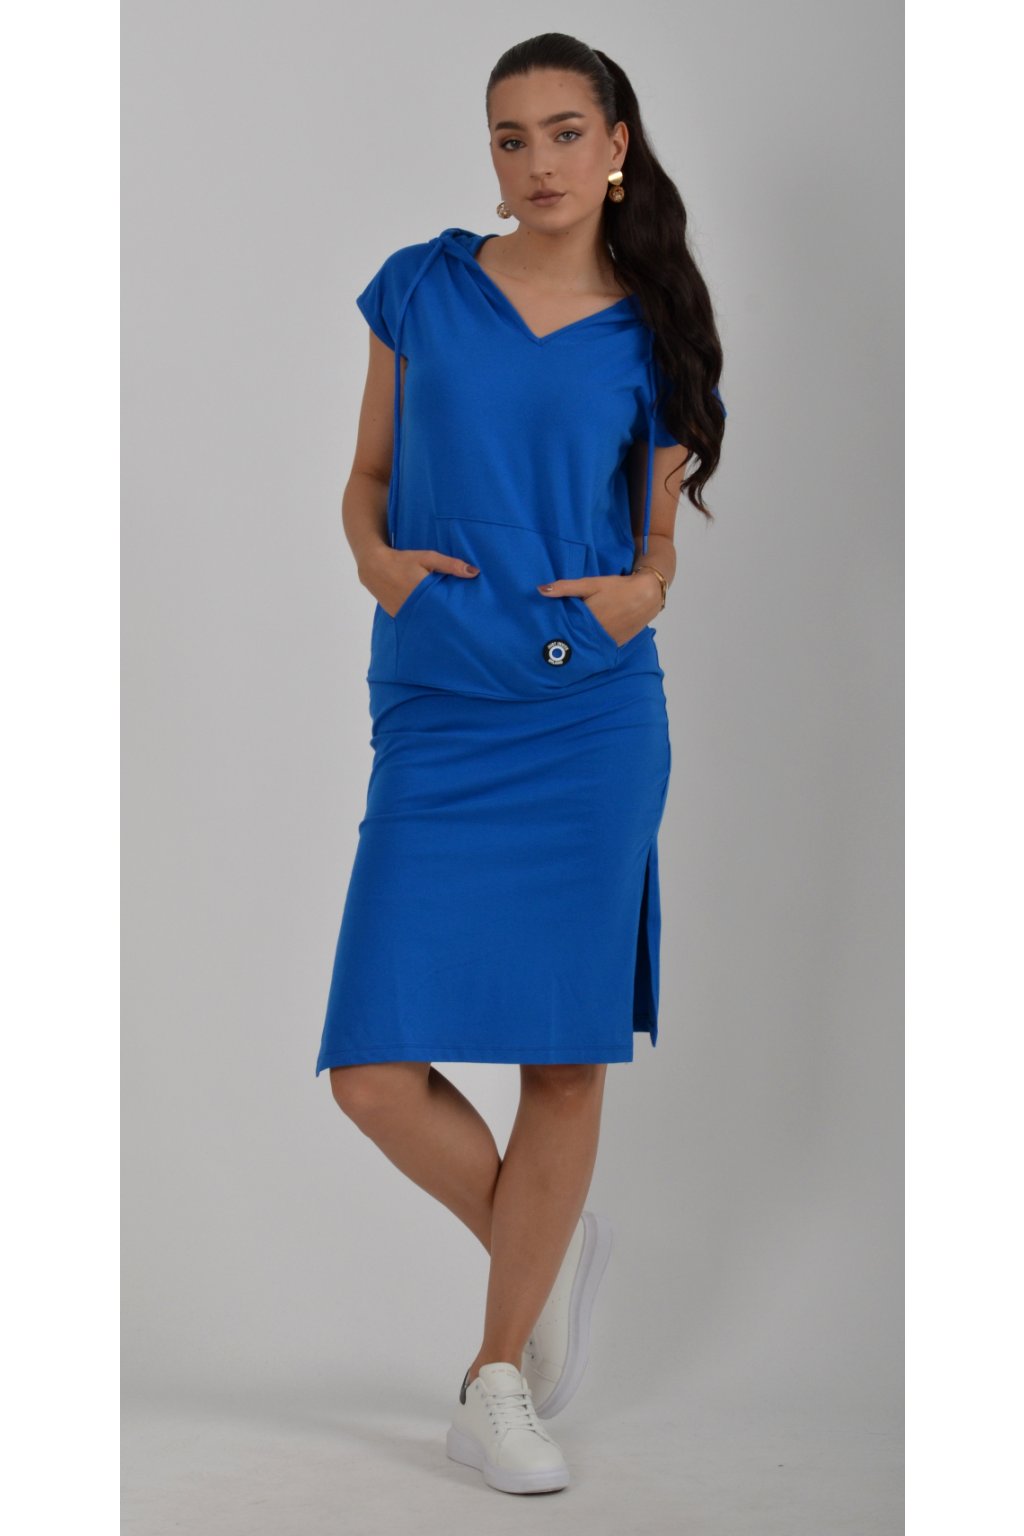 Sportovní modré šaty ES834